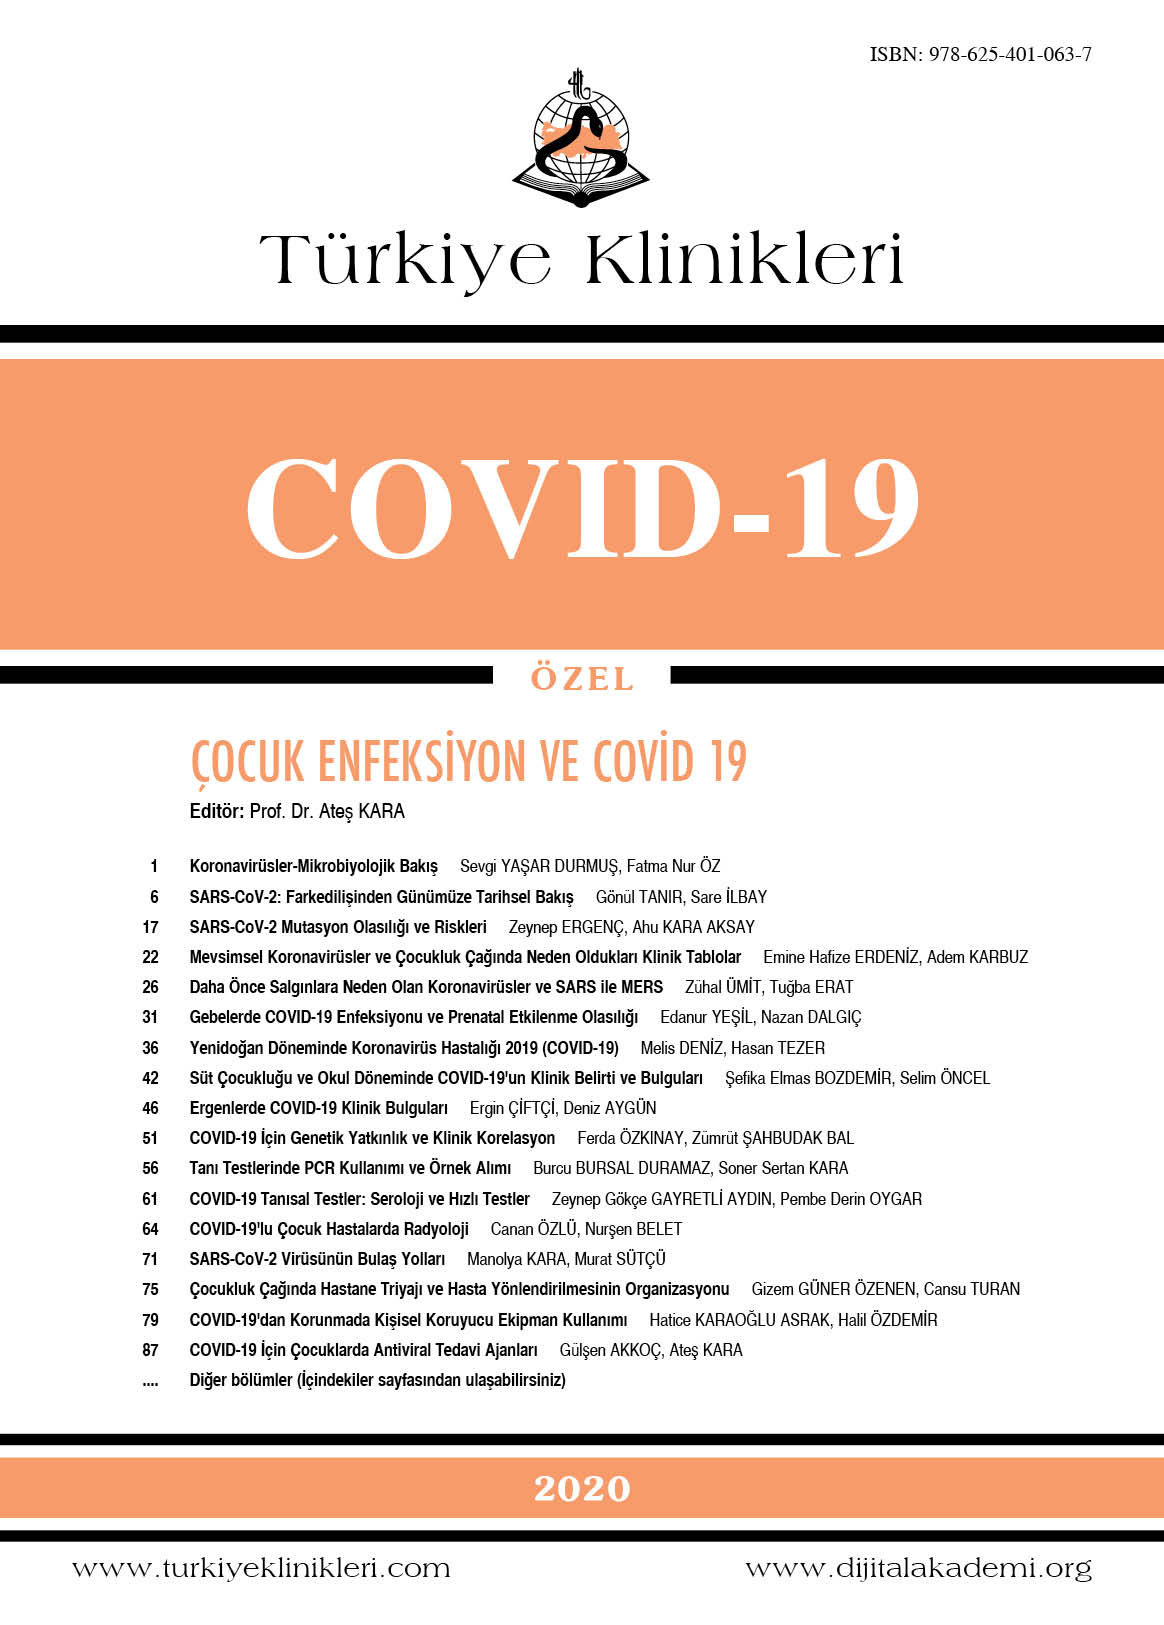 Cocuk Enfeksiyon Ve Covid 19 2020 Dergiler Turkiye Klinikleri